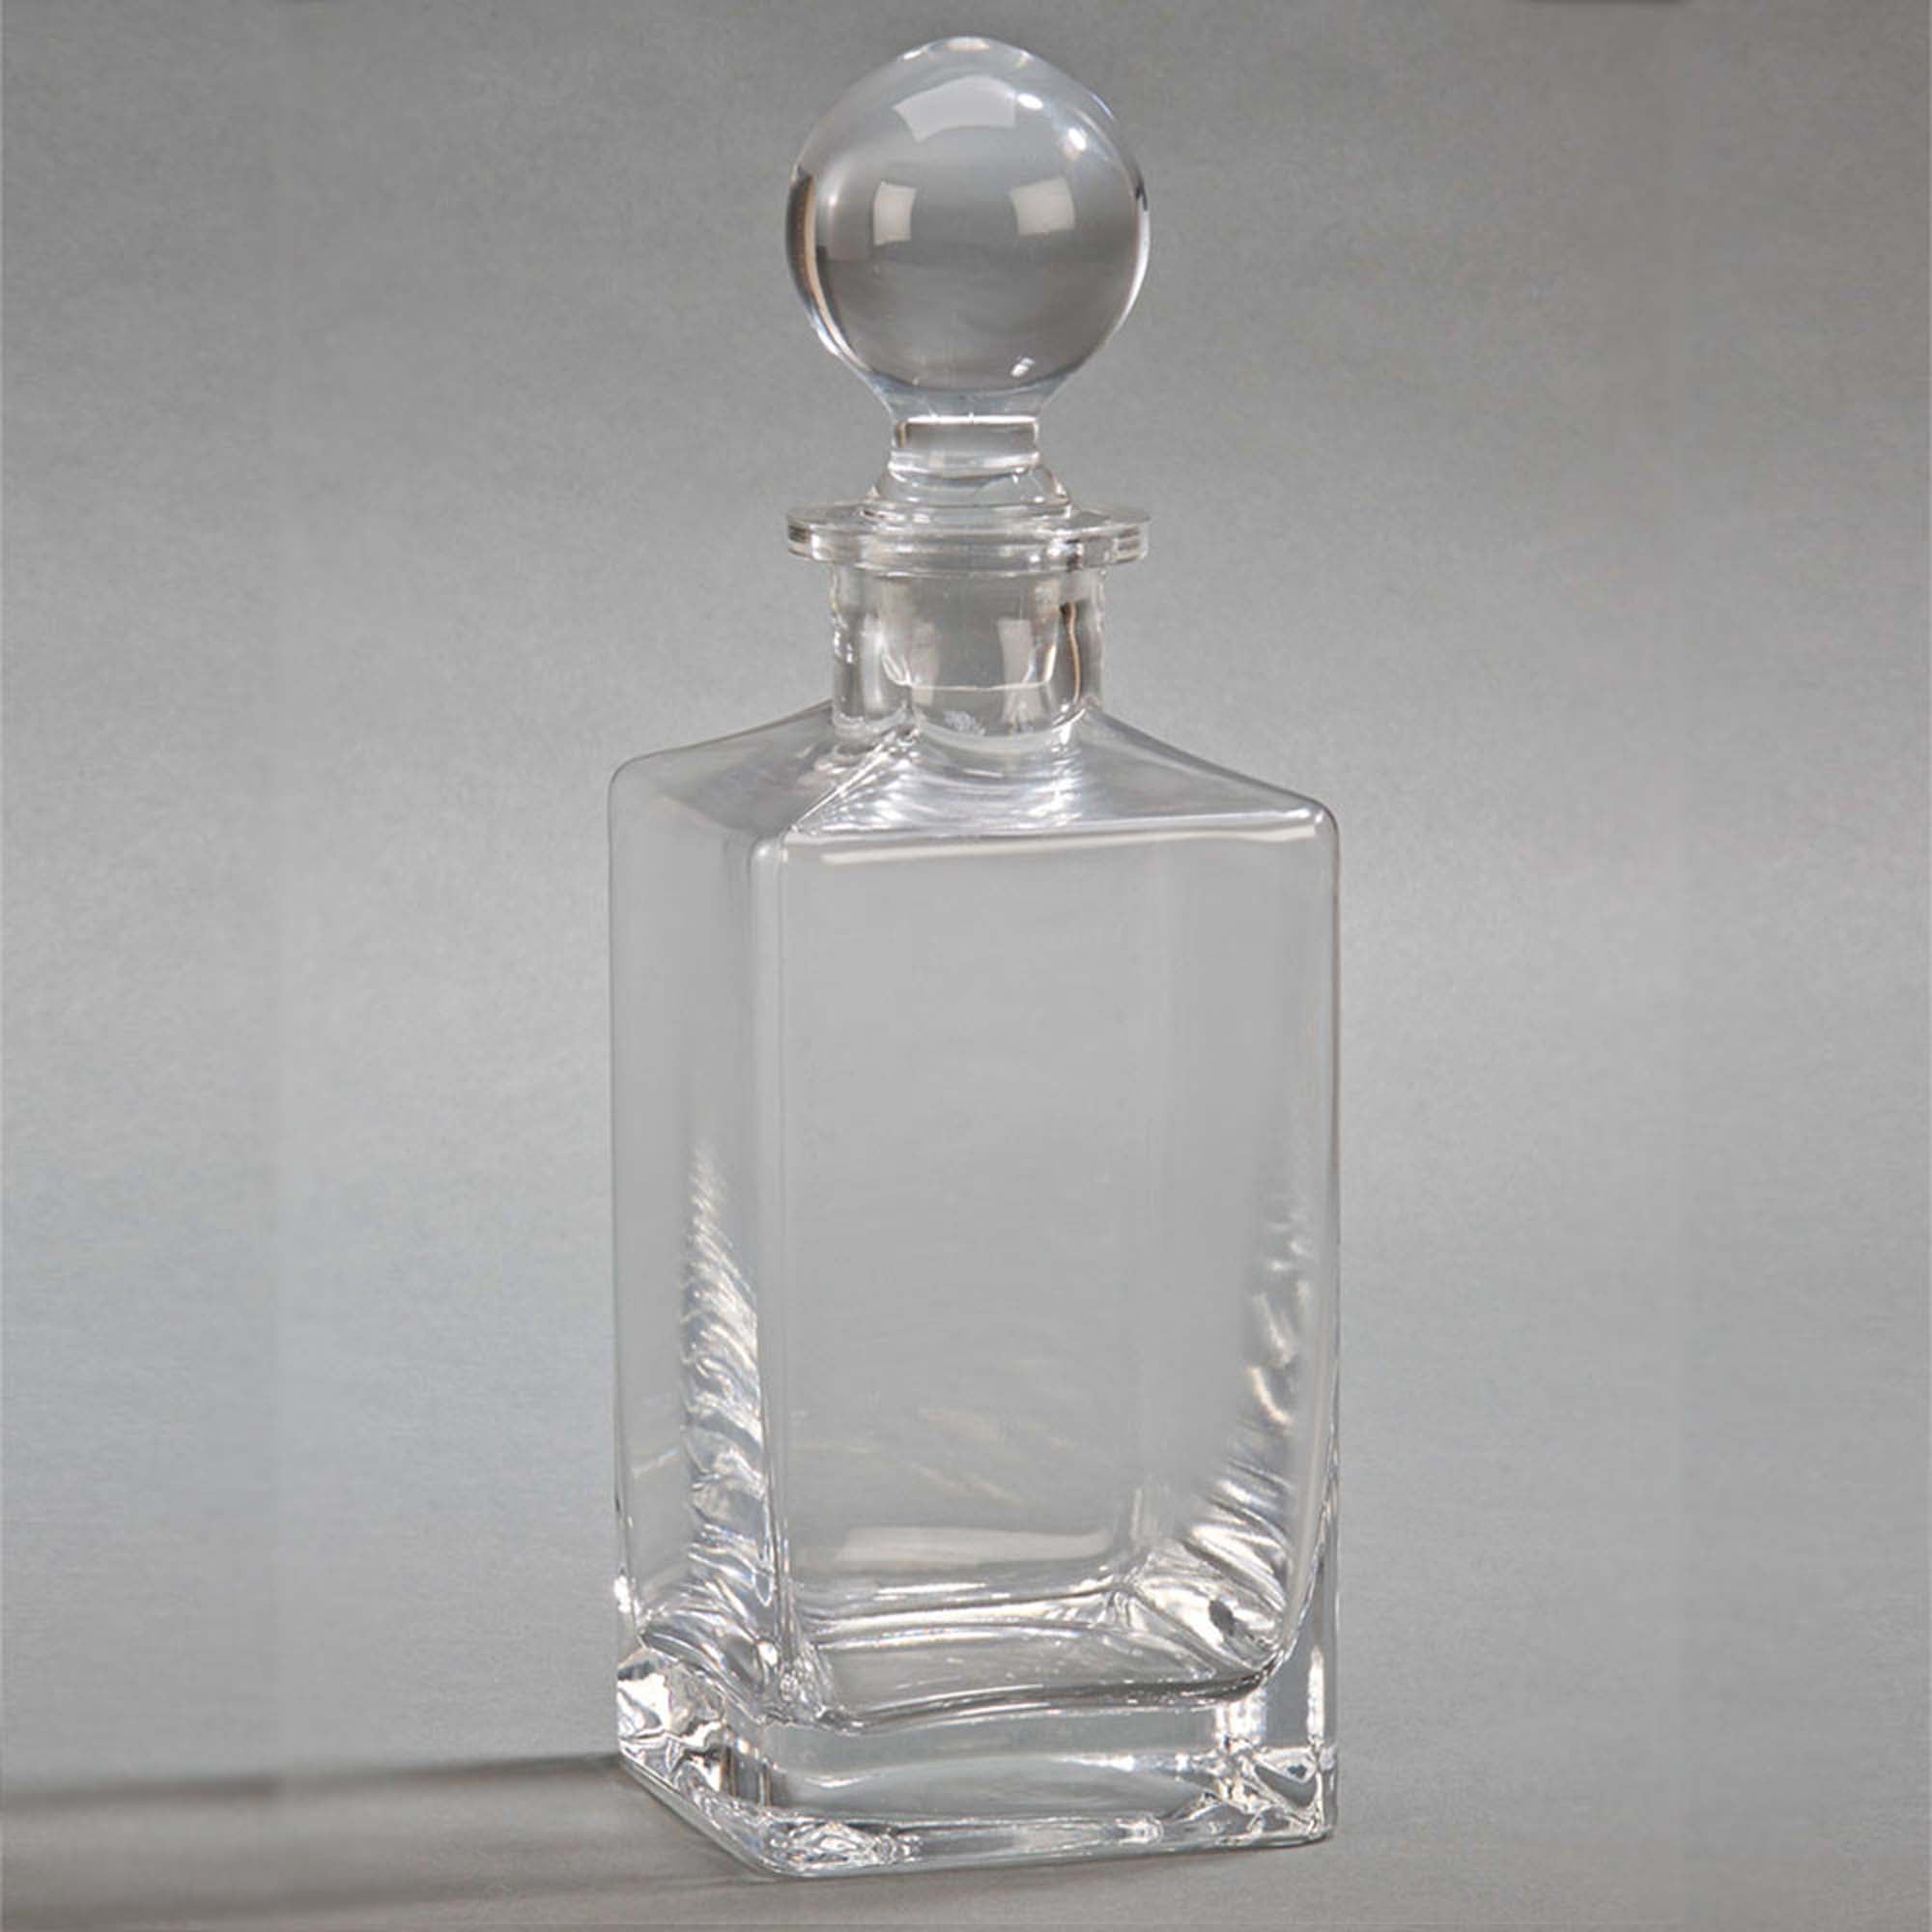 Bunn 64 oz. Glass Decanter with Black Handle 42400.0101